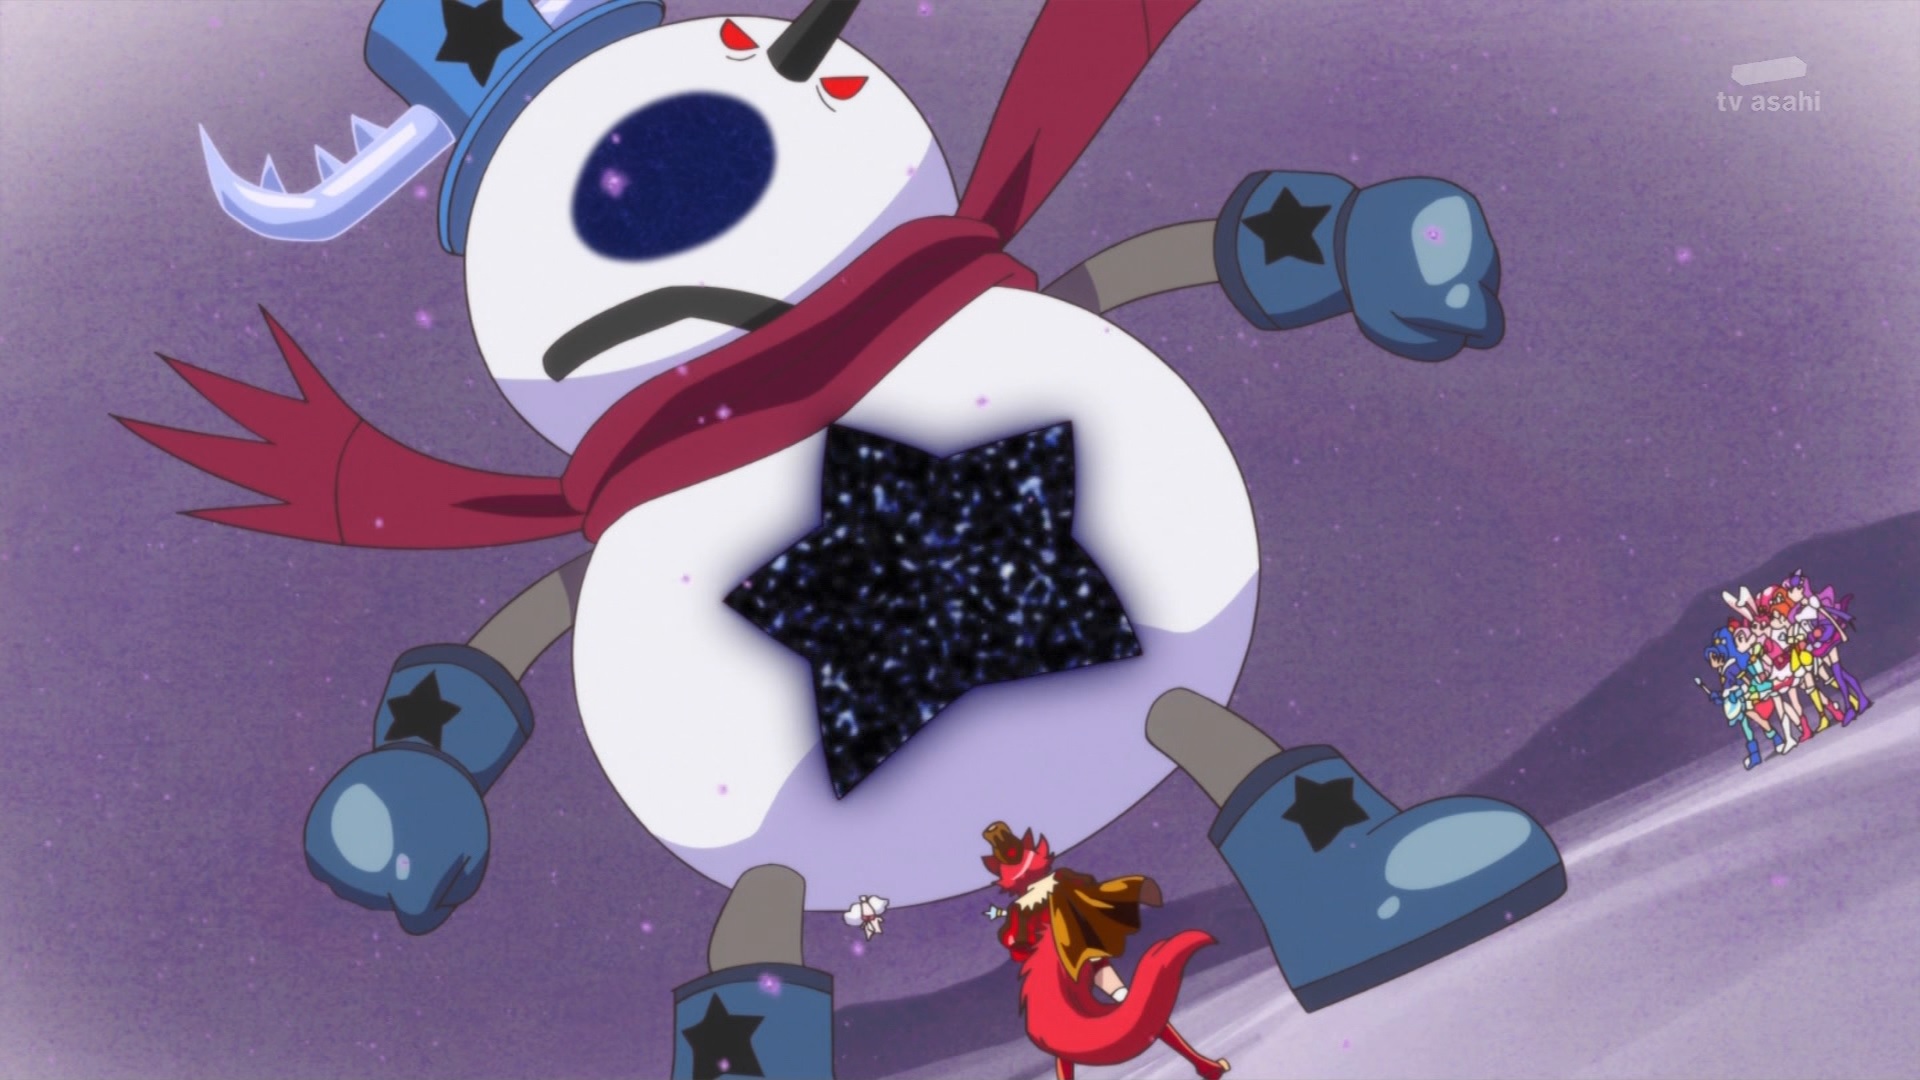 キラキラ プリキュアアラモード 第44話感想 剣城姉妹の雪だるまの約束